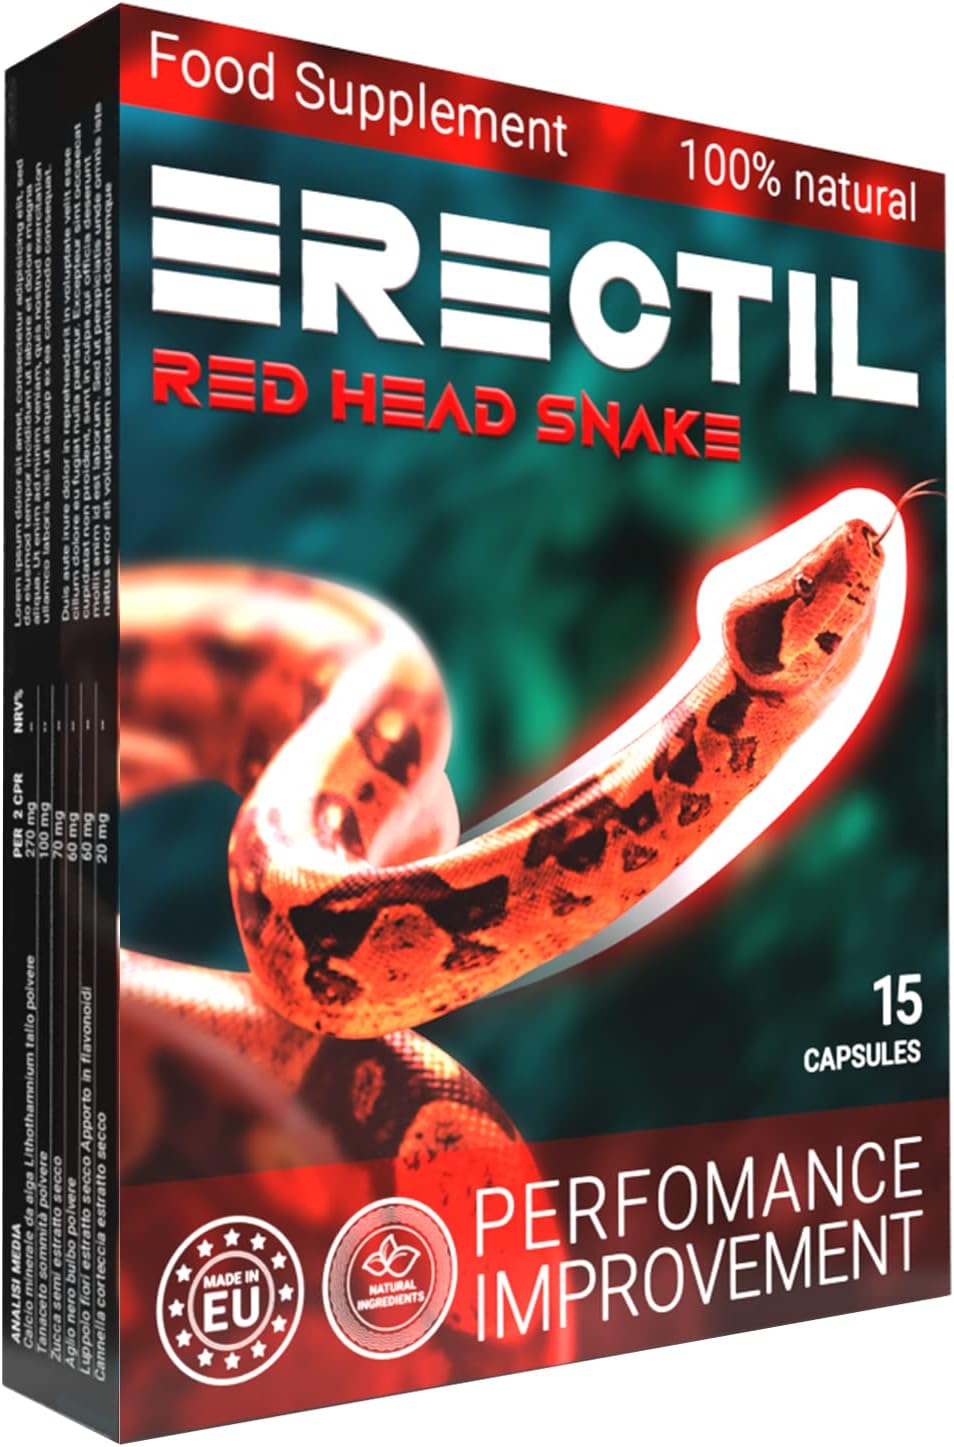 Erectil Red Head Snake